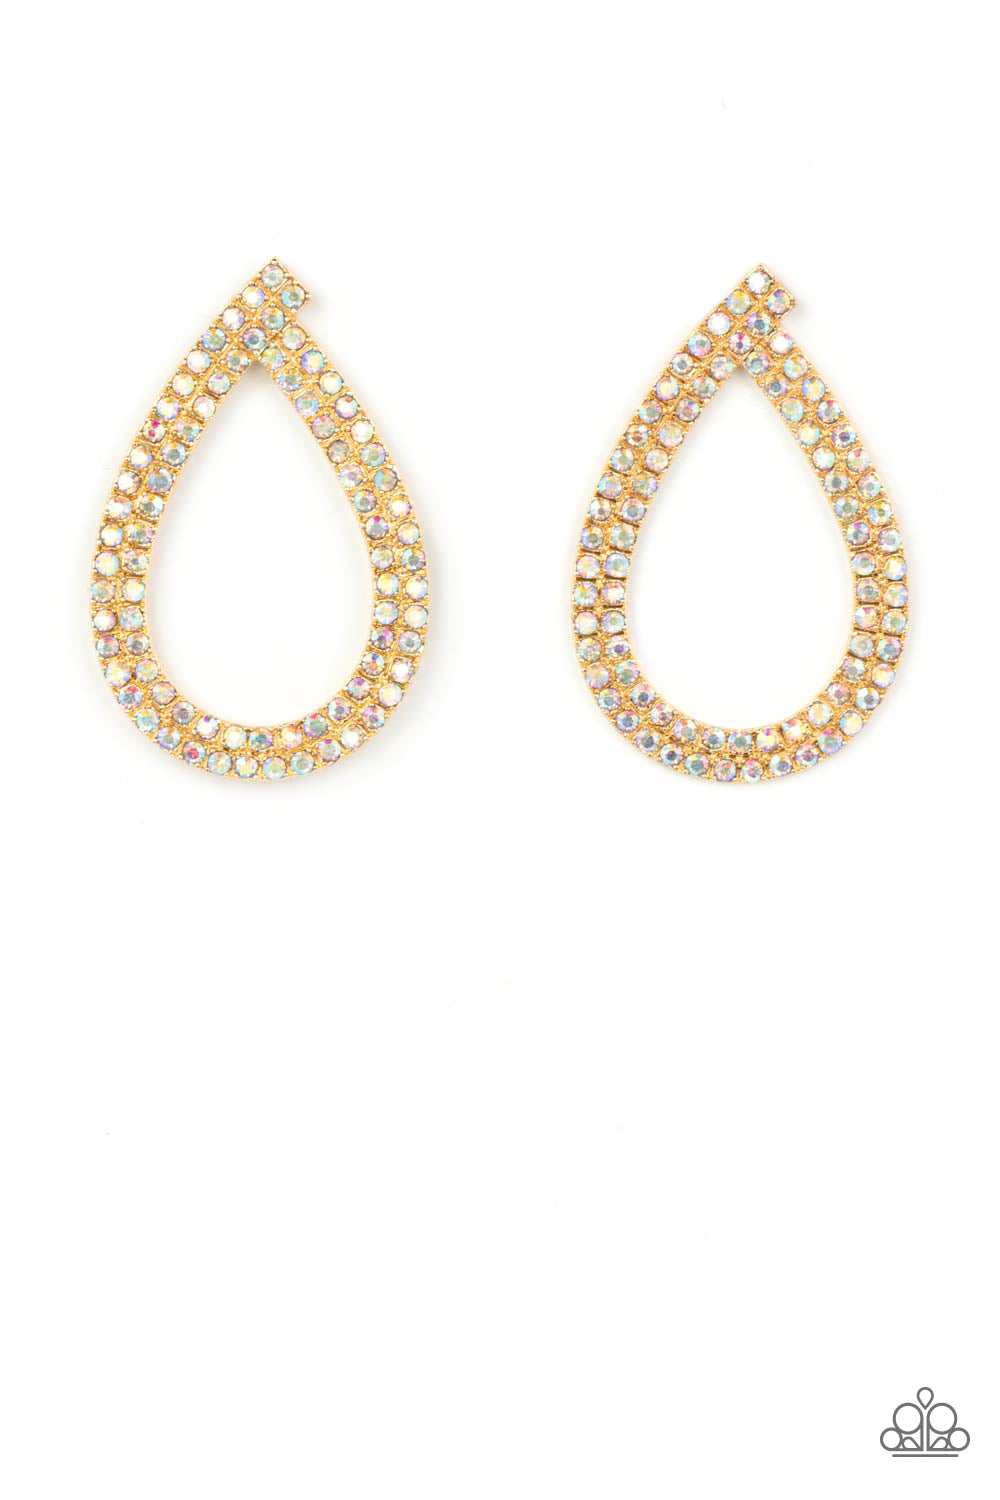 Diva Dust - gold - Paparazzi earrings